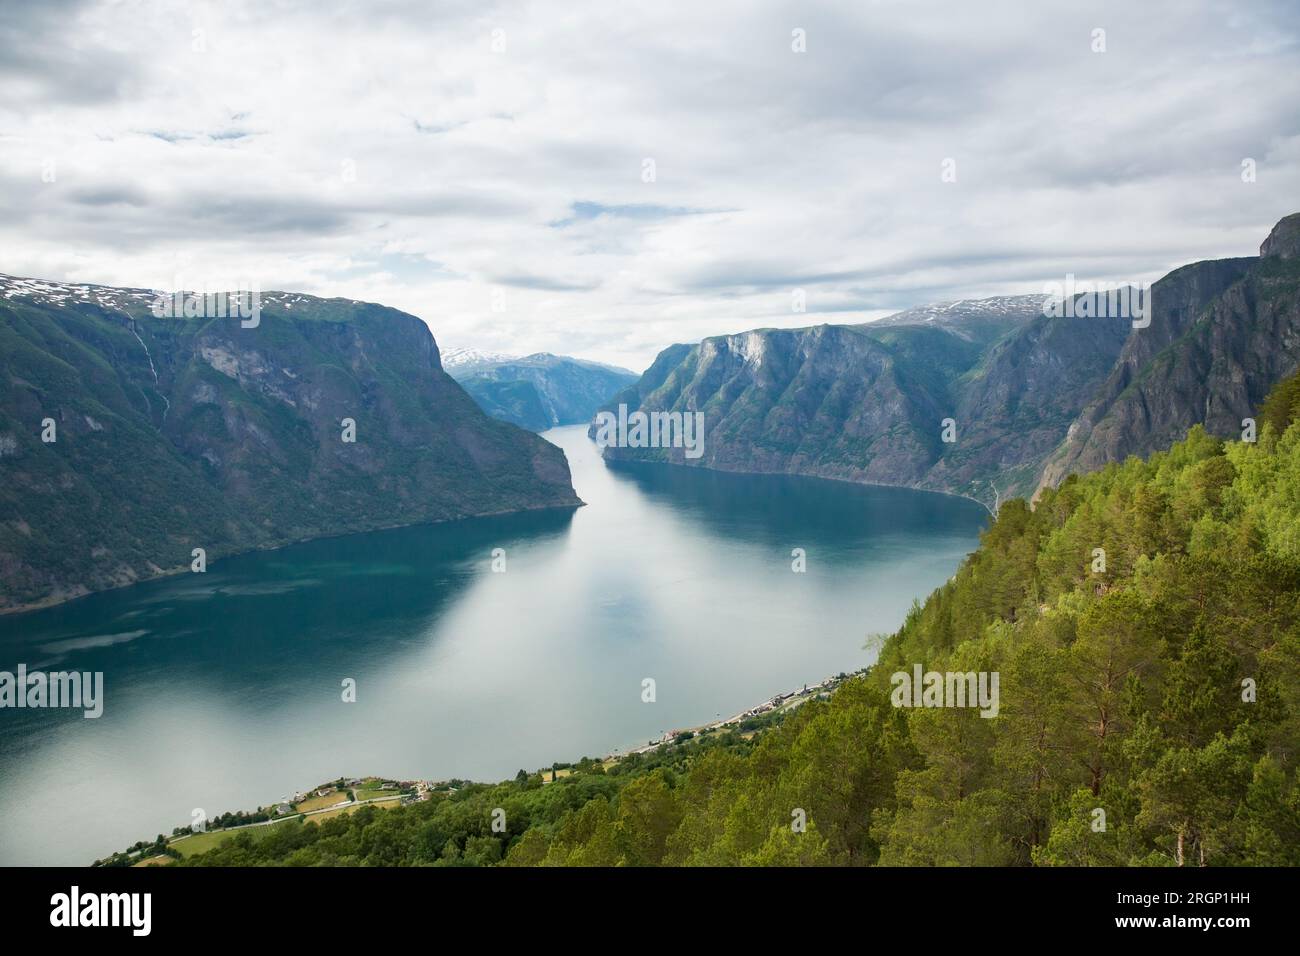 Aurlandsfjord fjord amazing landscape, Norway Scandinavia. National tourist route Aurlandsfjellet Stock Photo